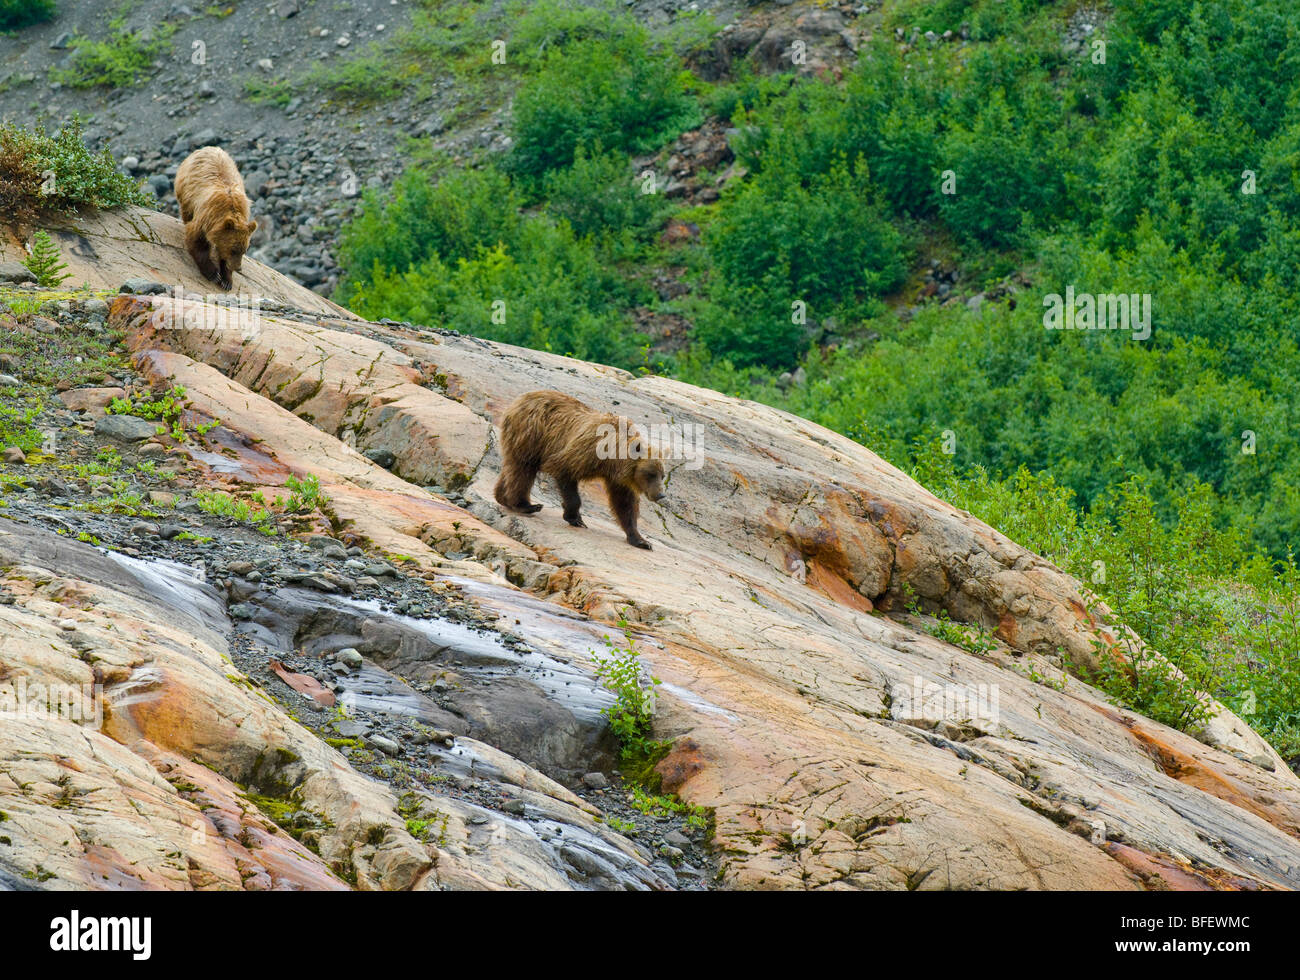 Madre y mujer joven osos grizzly (Ursus arctos horribilis) desciende por una formación rocosa llamada Roche Moutonnee creado por Foto de stock